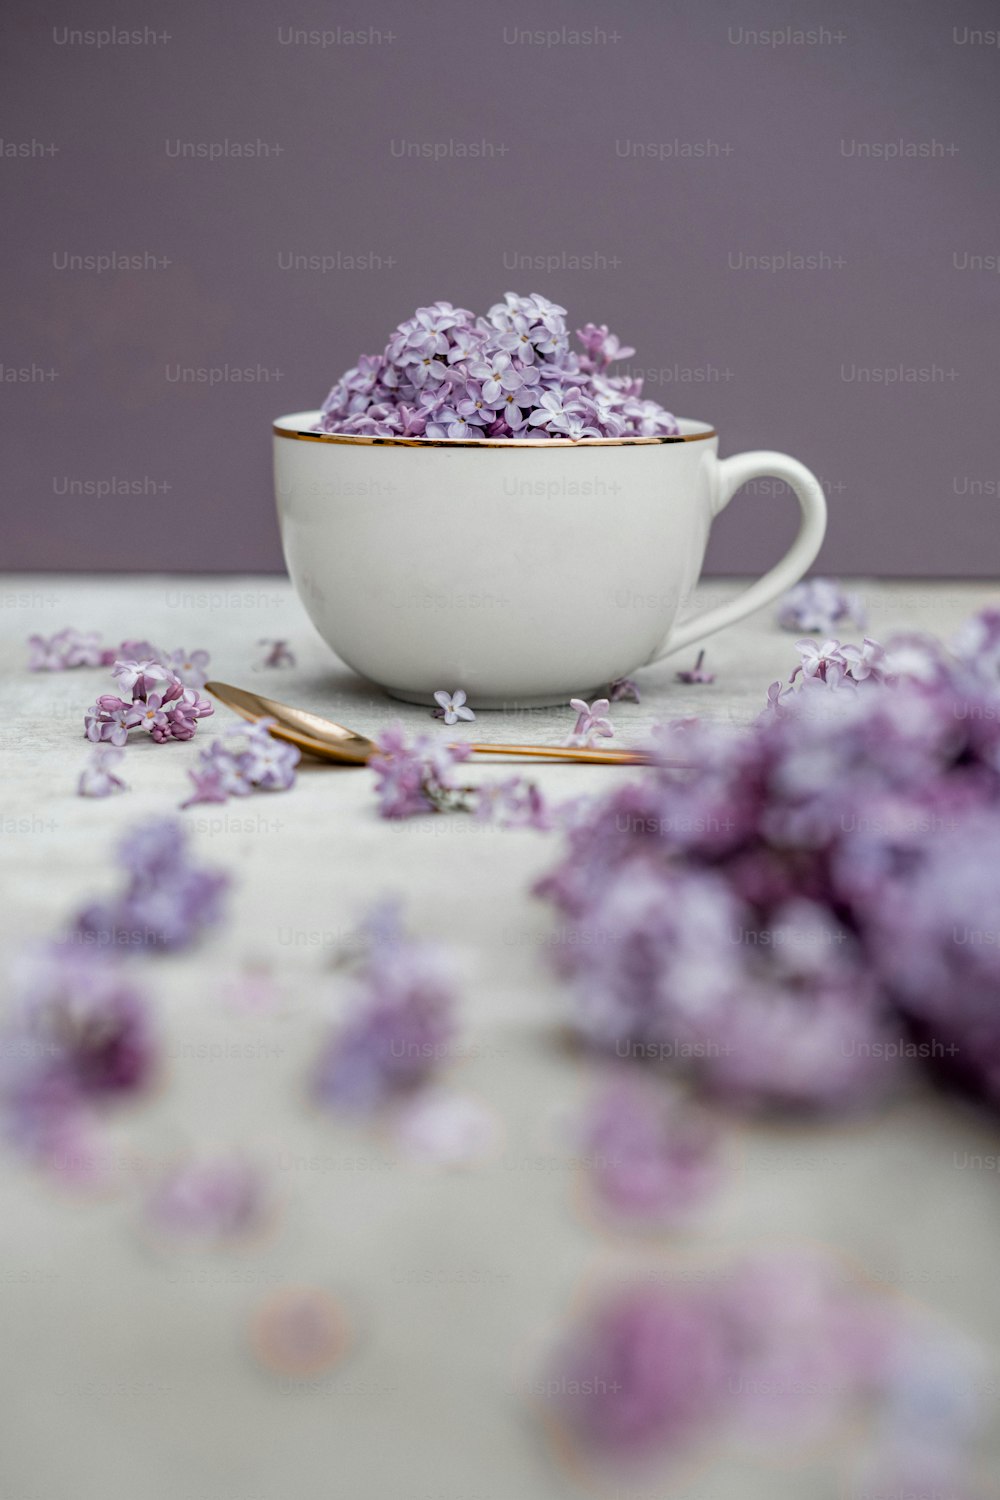 Un cuenco blanco lleno de flores púrpuras encima de una mesa